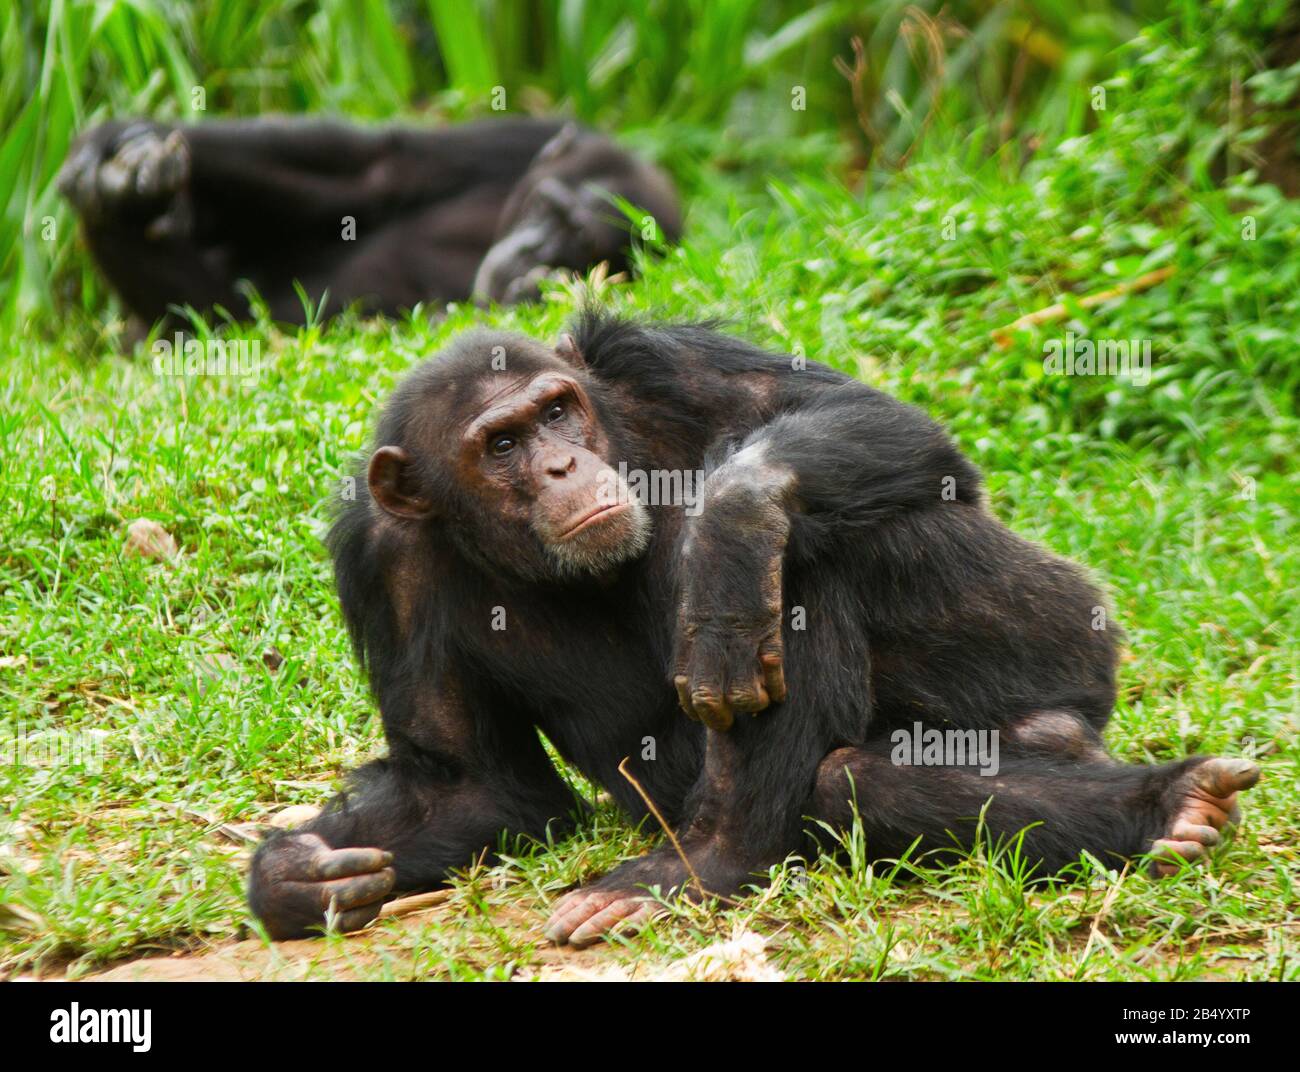 Un Chimpanzee adulto se relaja durante la mitad del día después de una ajetreada mañana de interacción dentro de la tropa Foto de stock